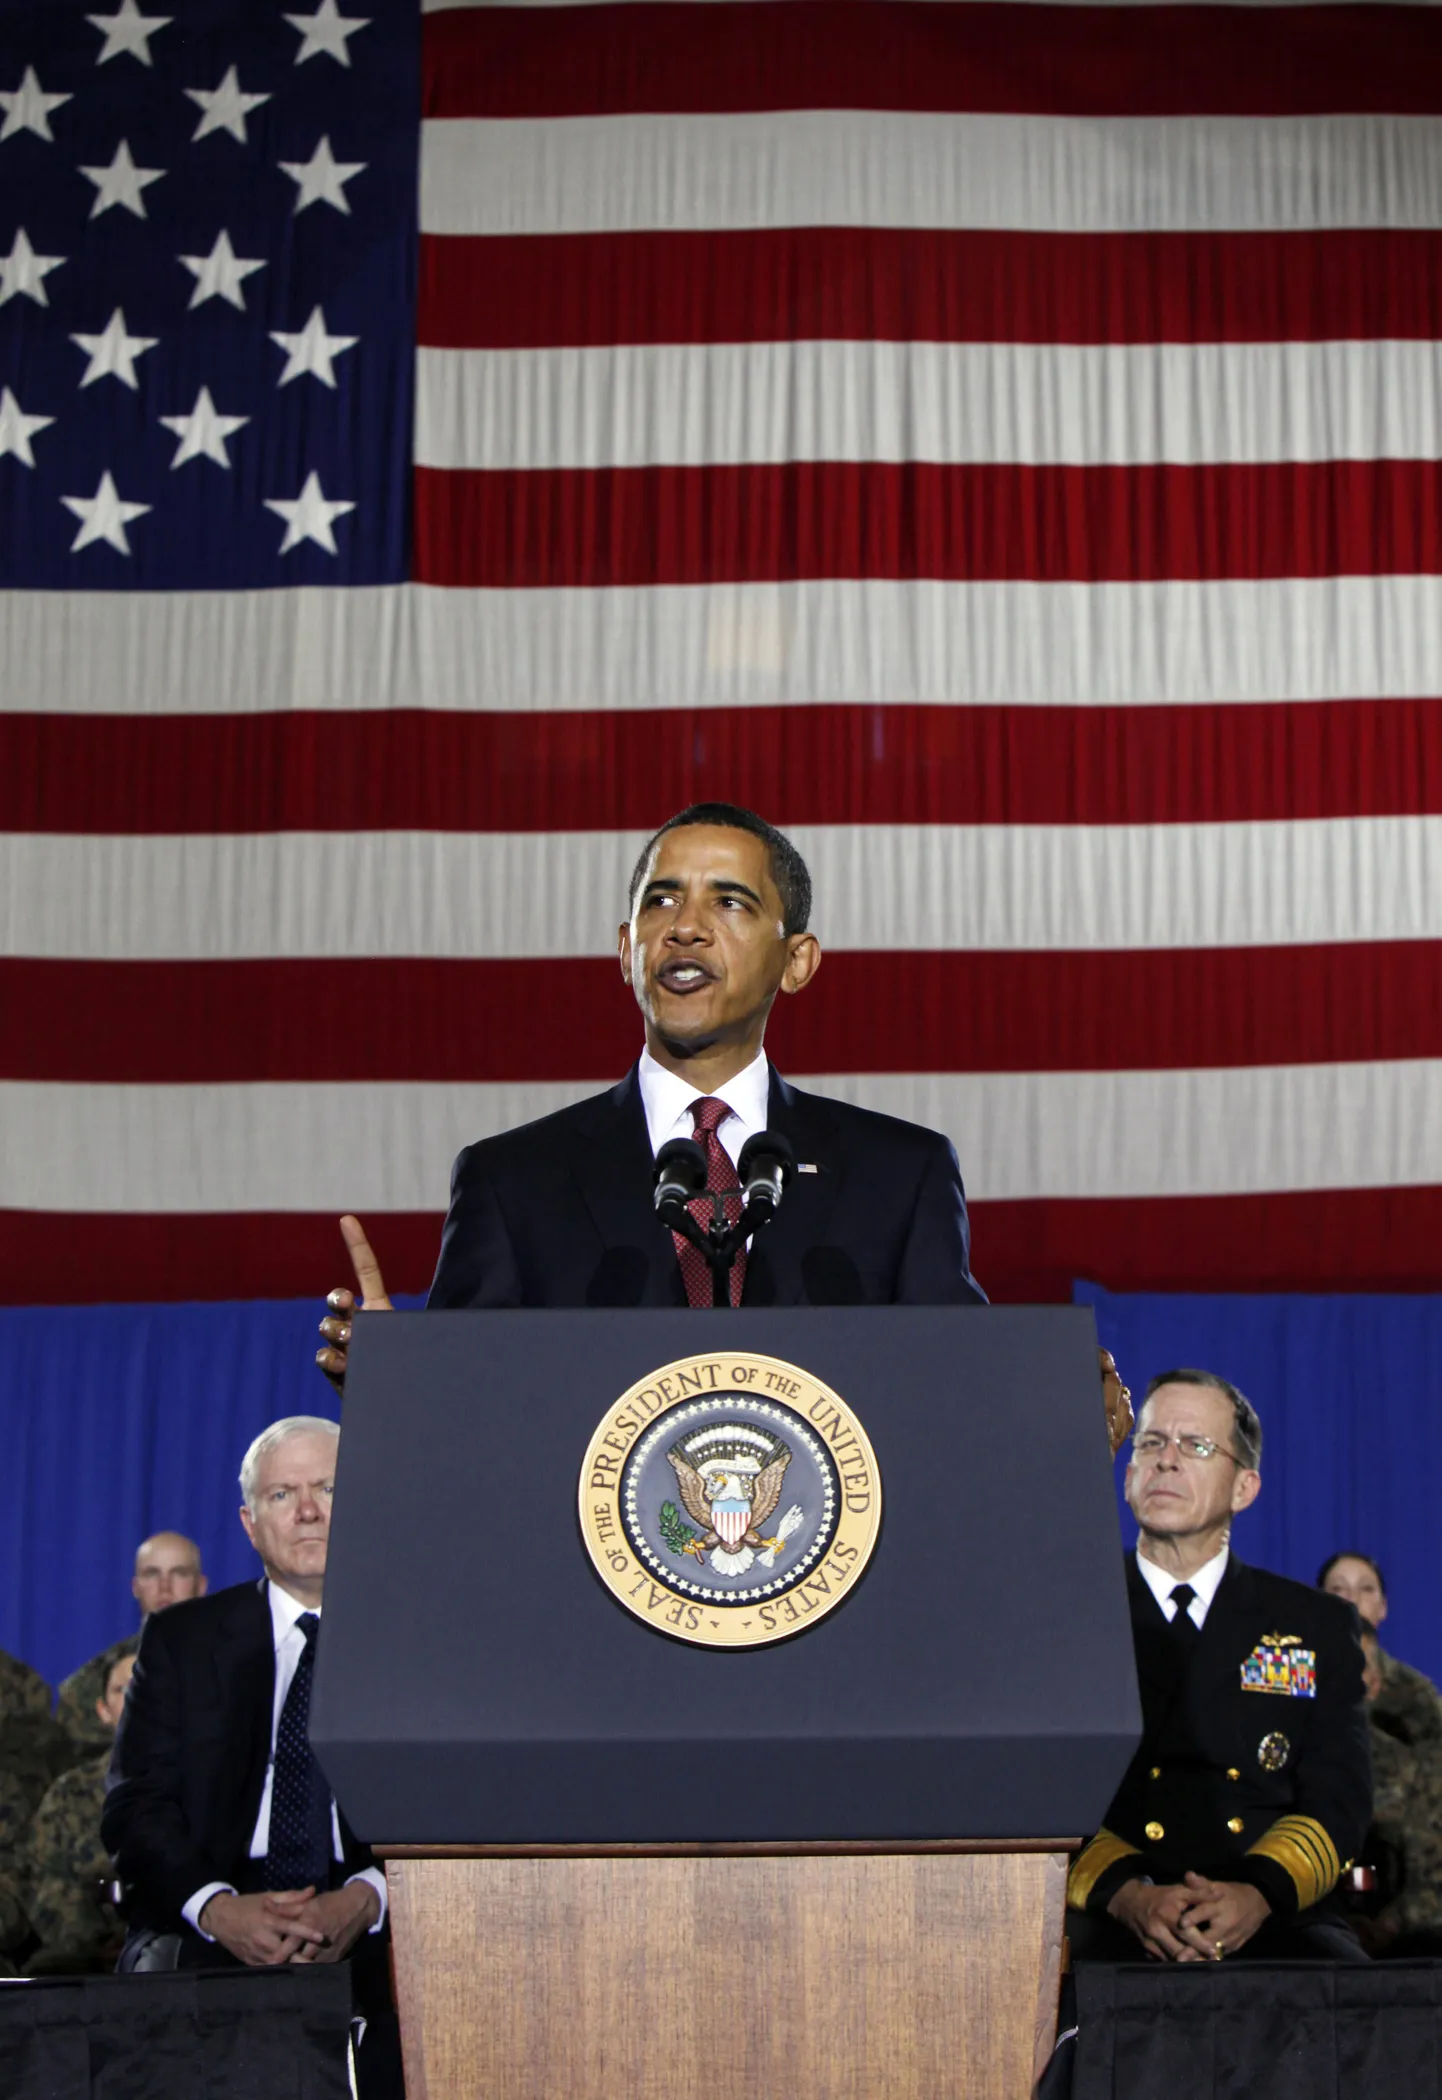 USA riigipea Barack Obama möödunud reedel Camp Lejeune’i merejalaväebaasis kõnet pidamas.